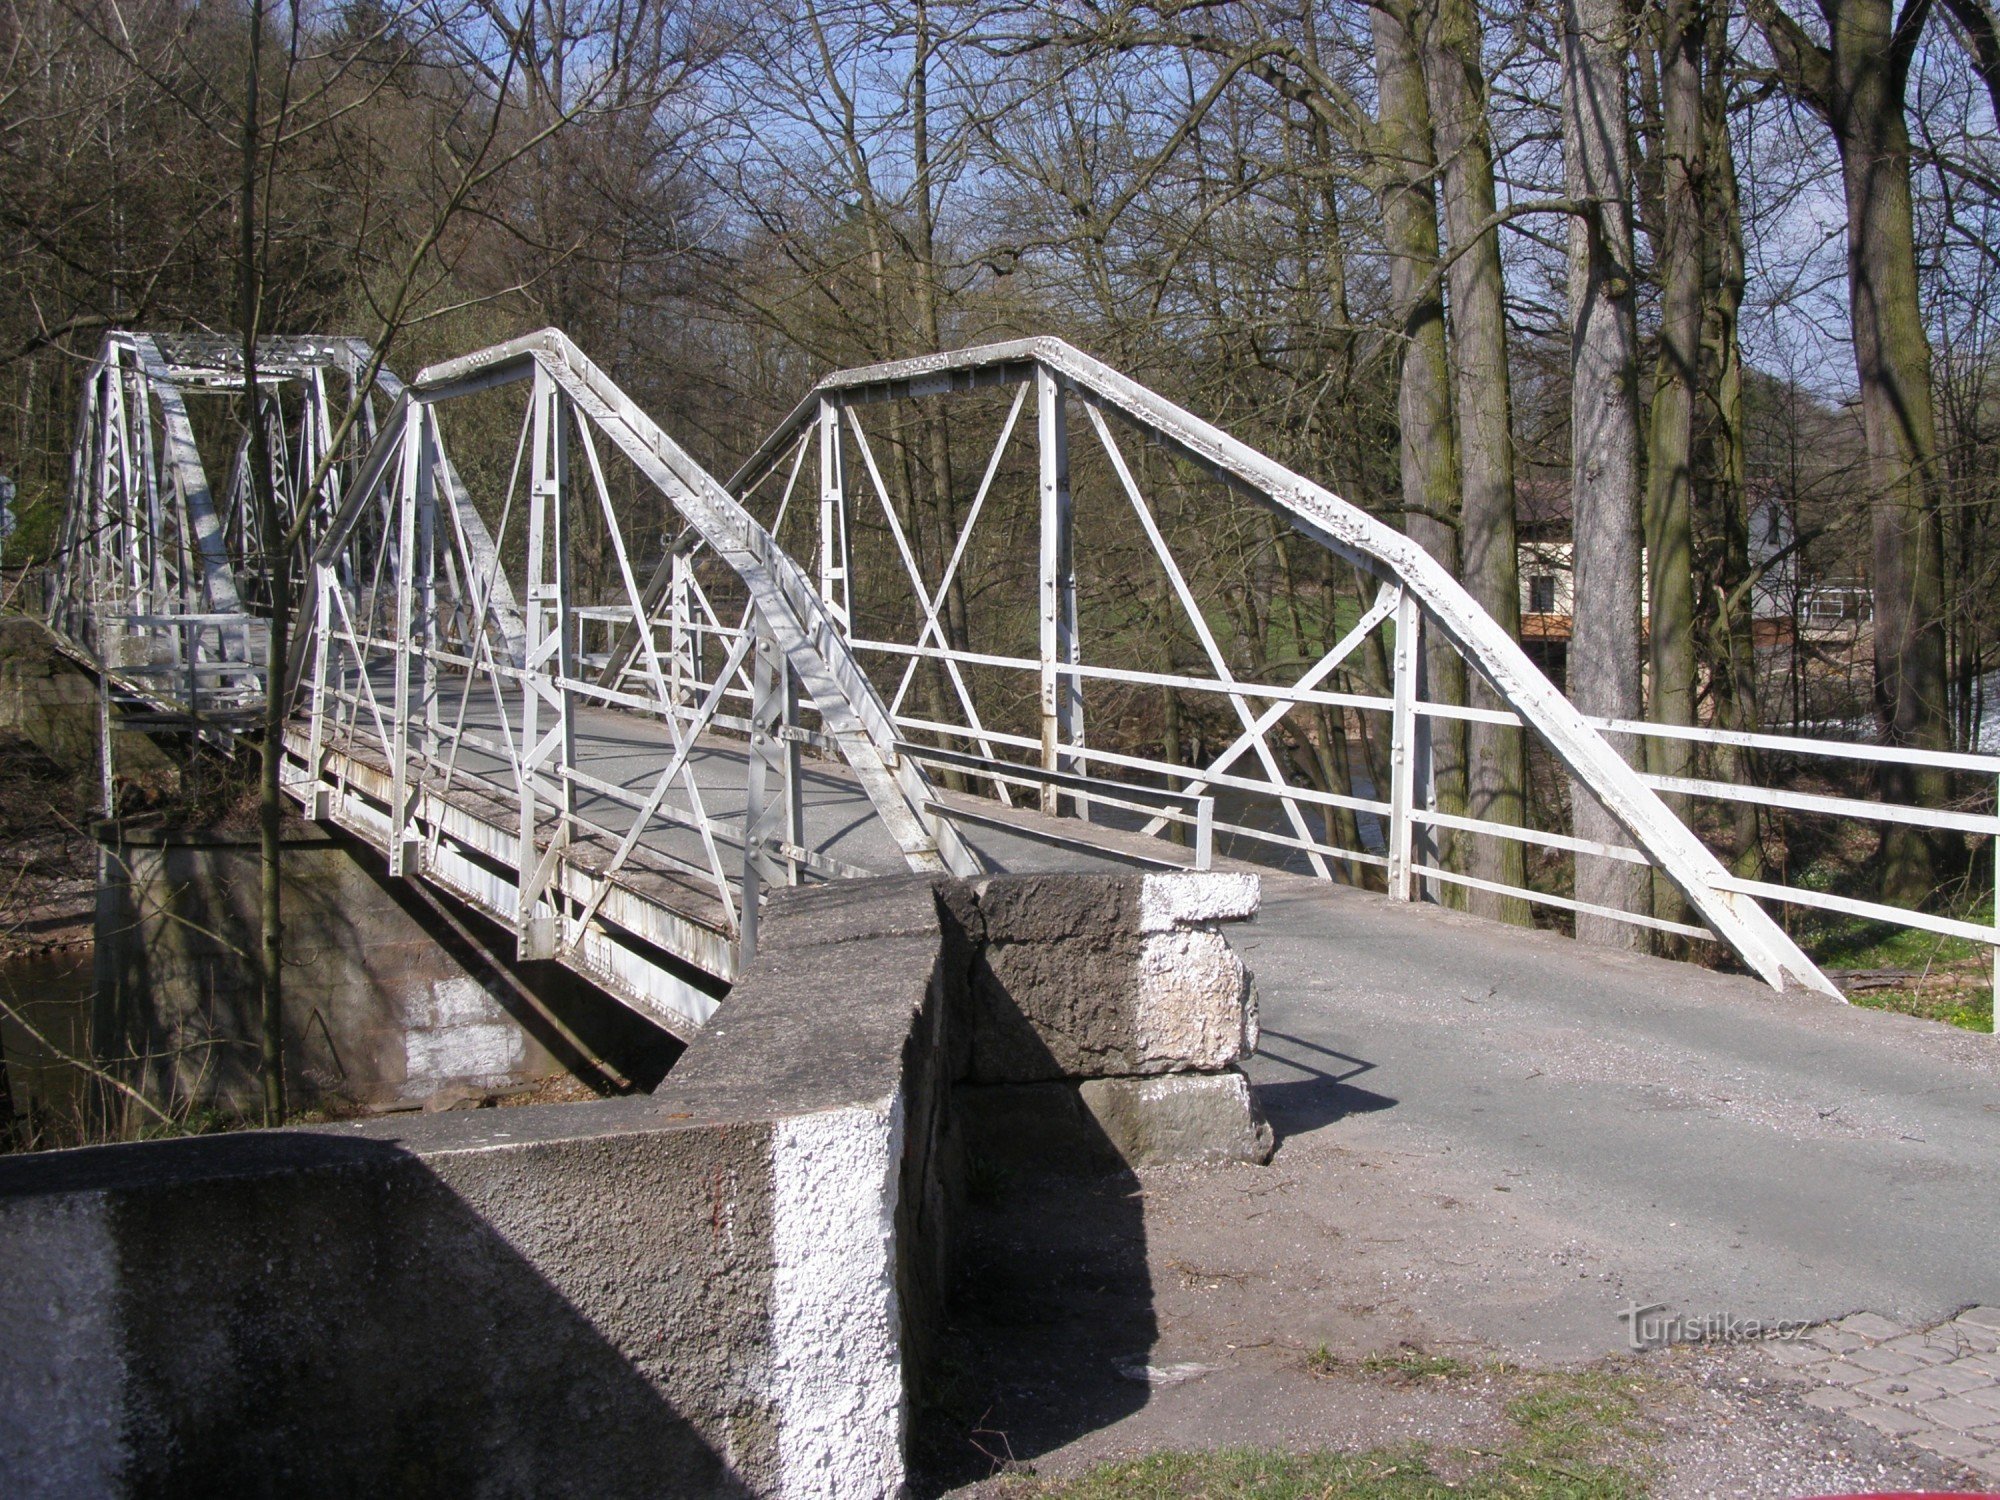 τουριστικό σταυροδρόμι Stanovice - κοντά στη γέφυρα